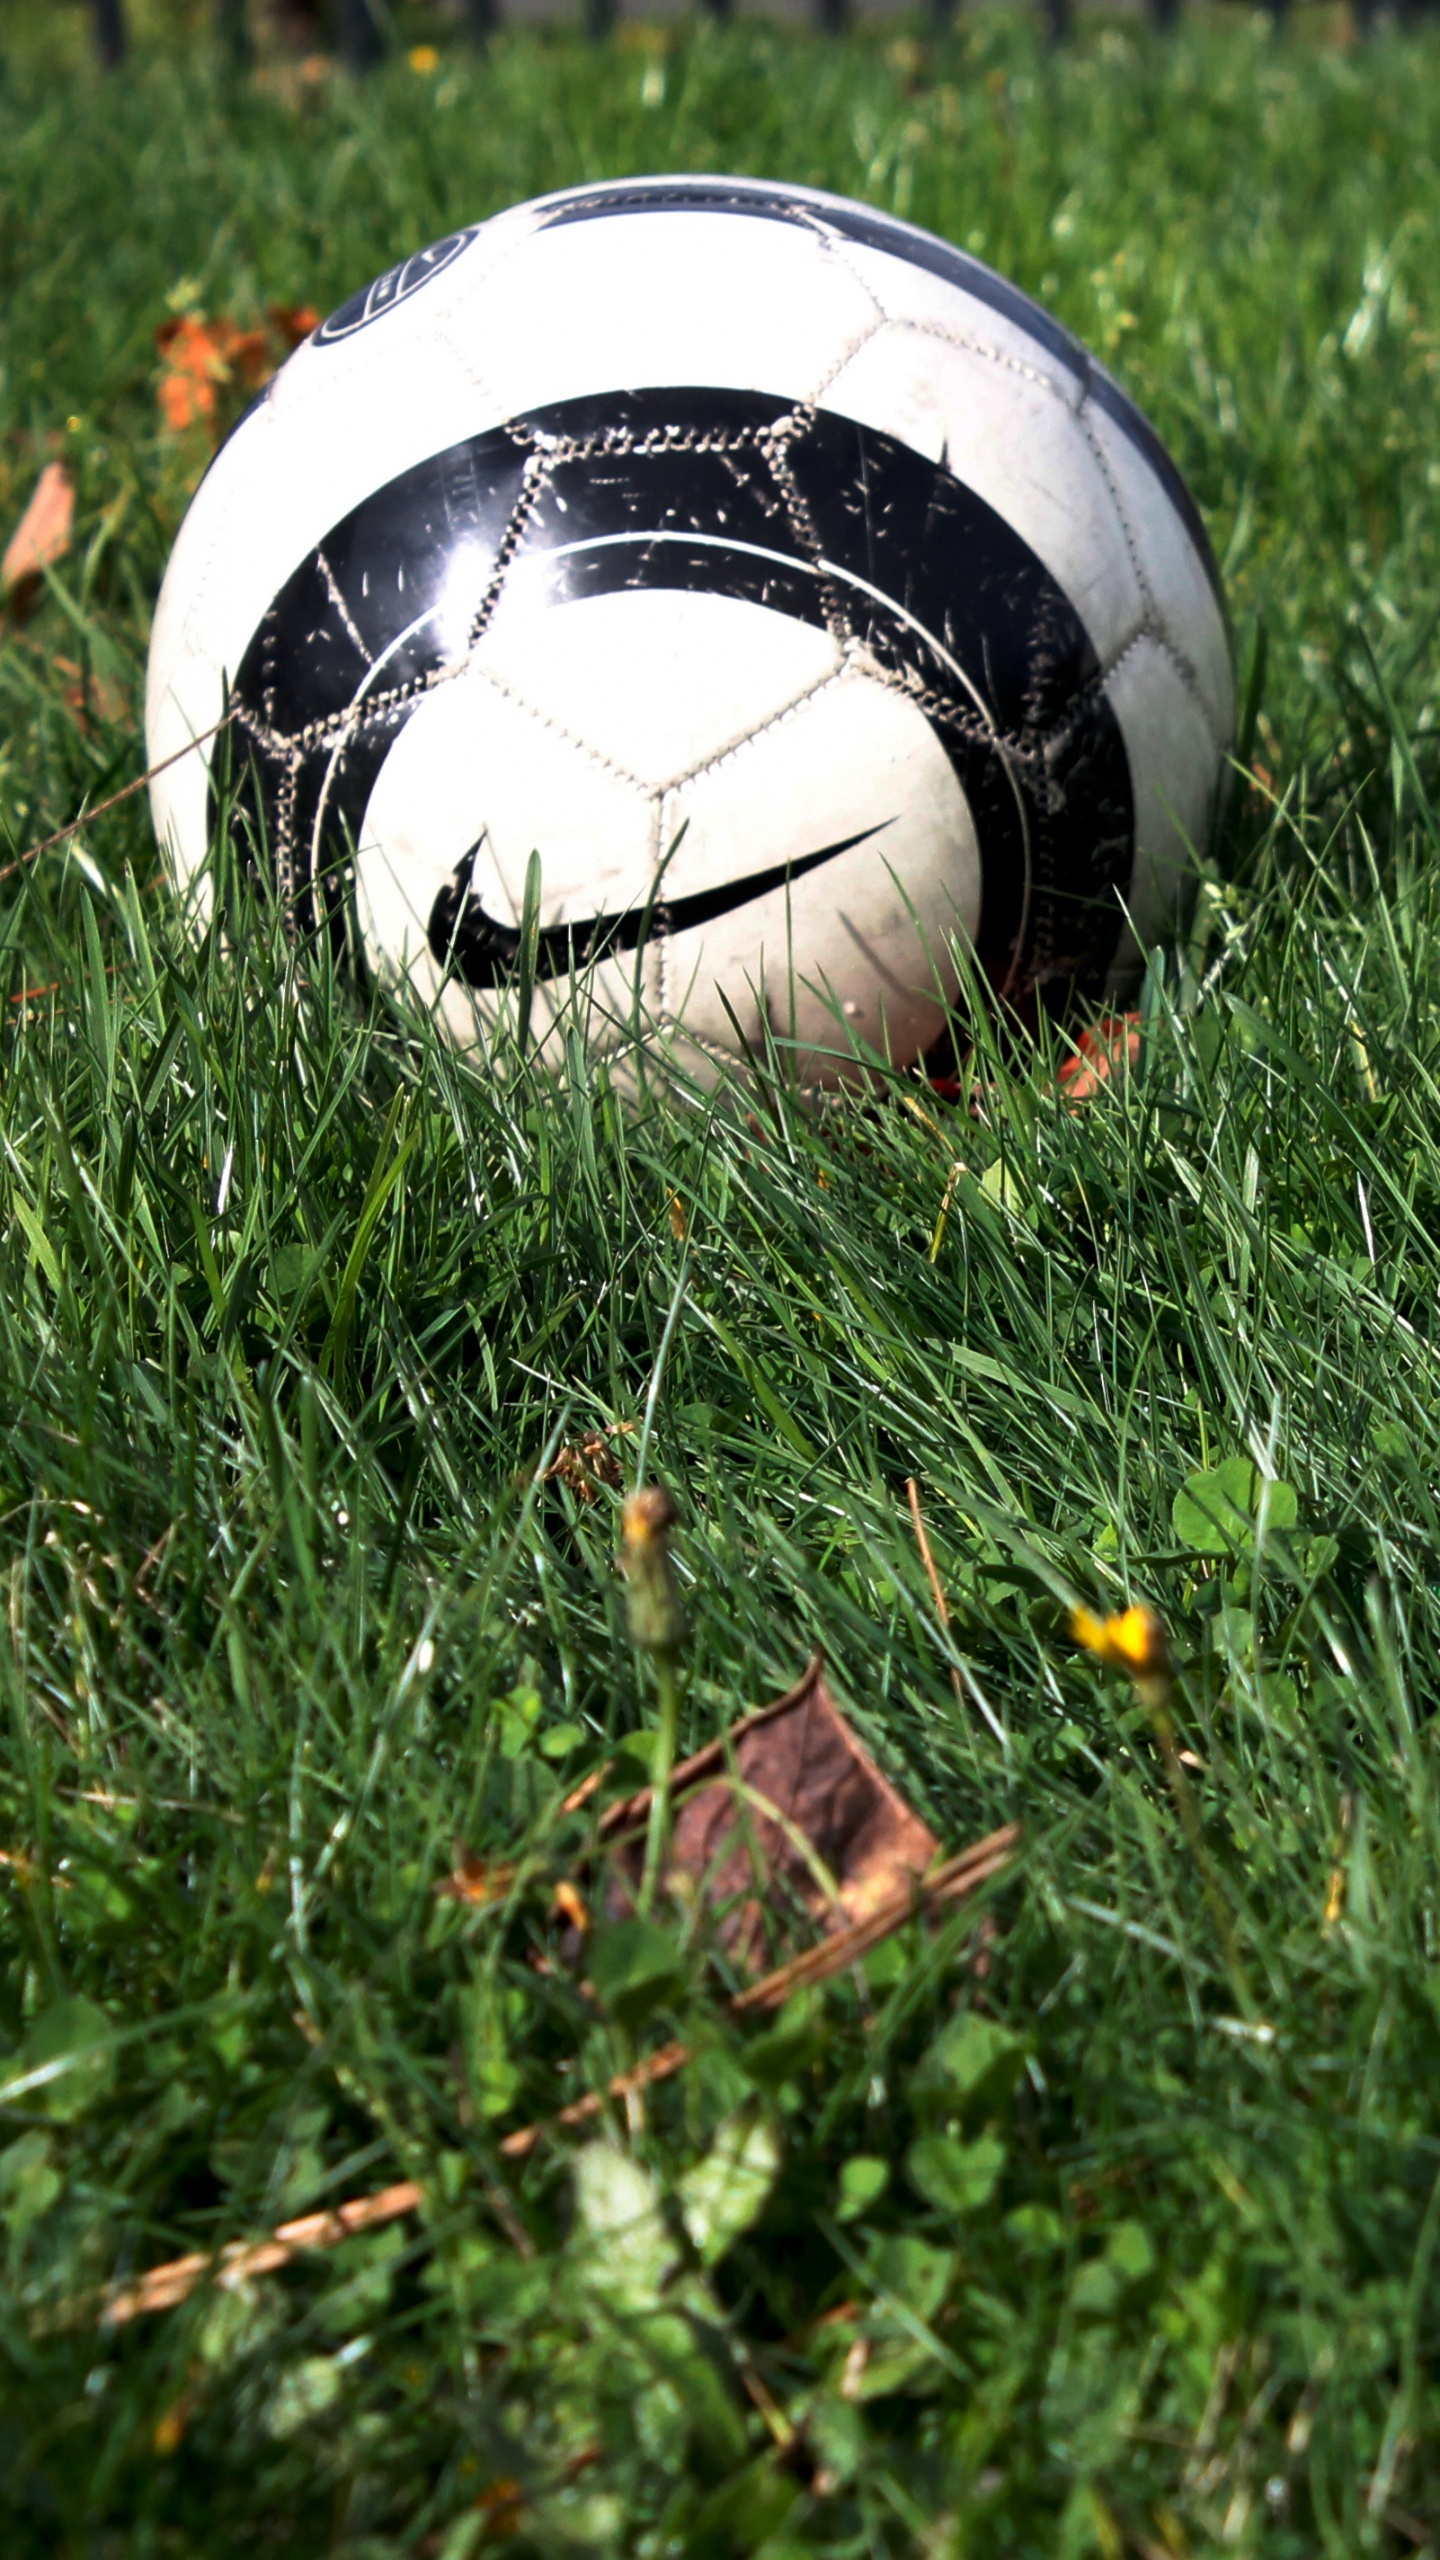 球, 体育设备, 足球, 草, 草坪 壁纸 1440x2560 允许